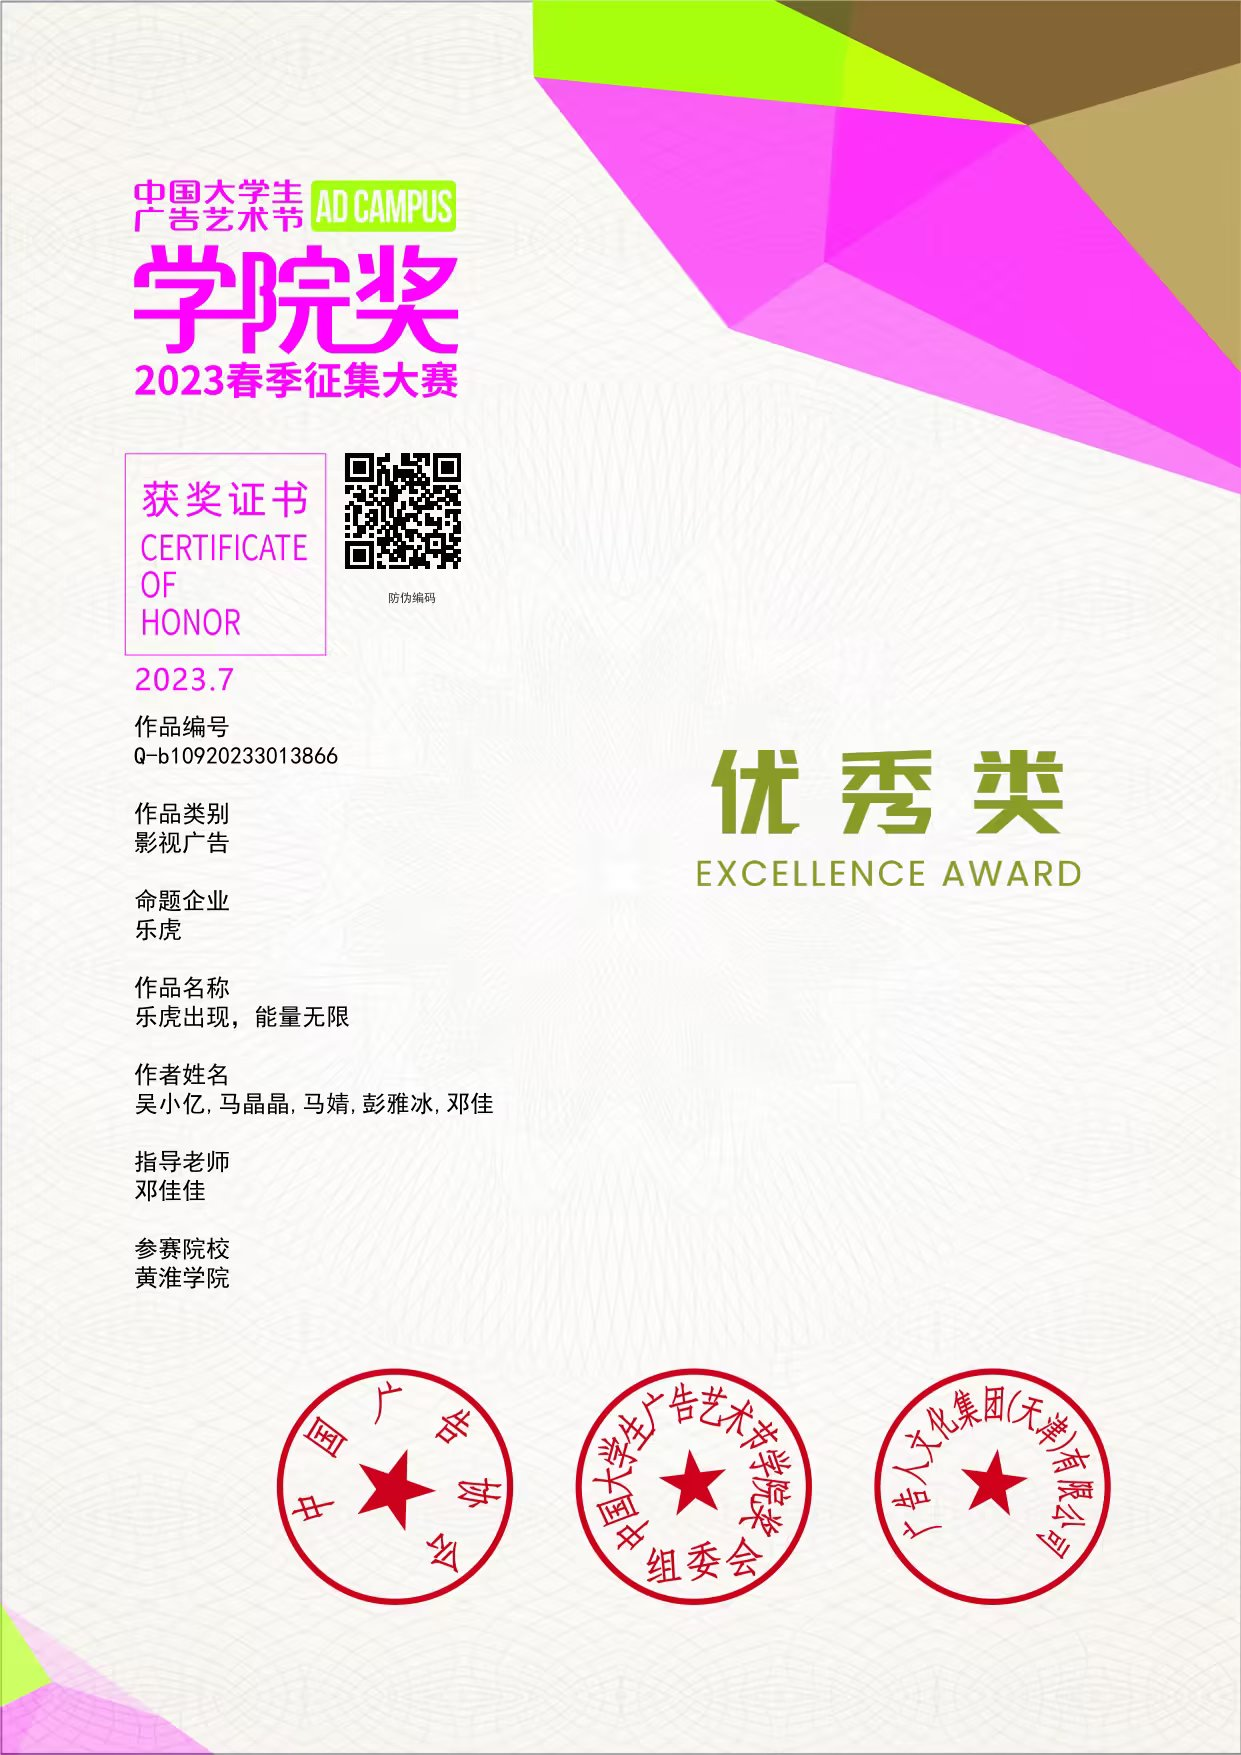 文传学子在2023年春季“中国大员工广告艺术节学院奖”中荣获佳绩